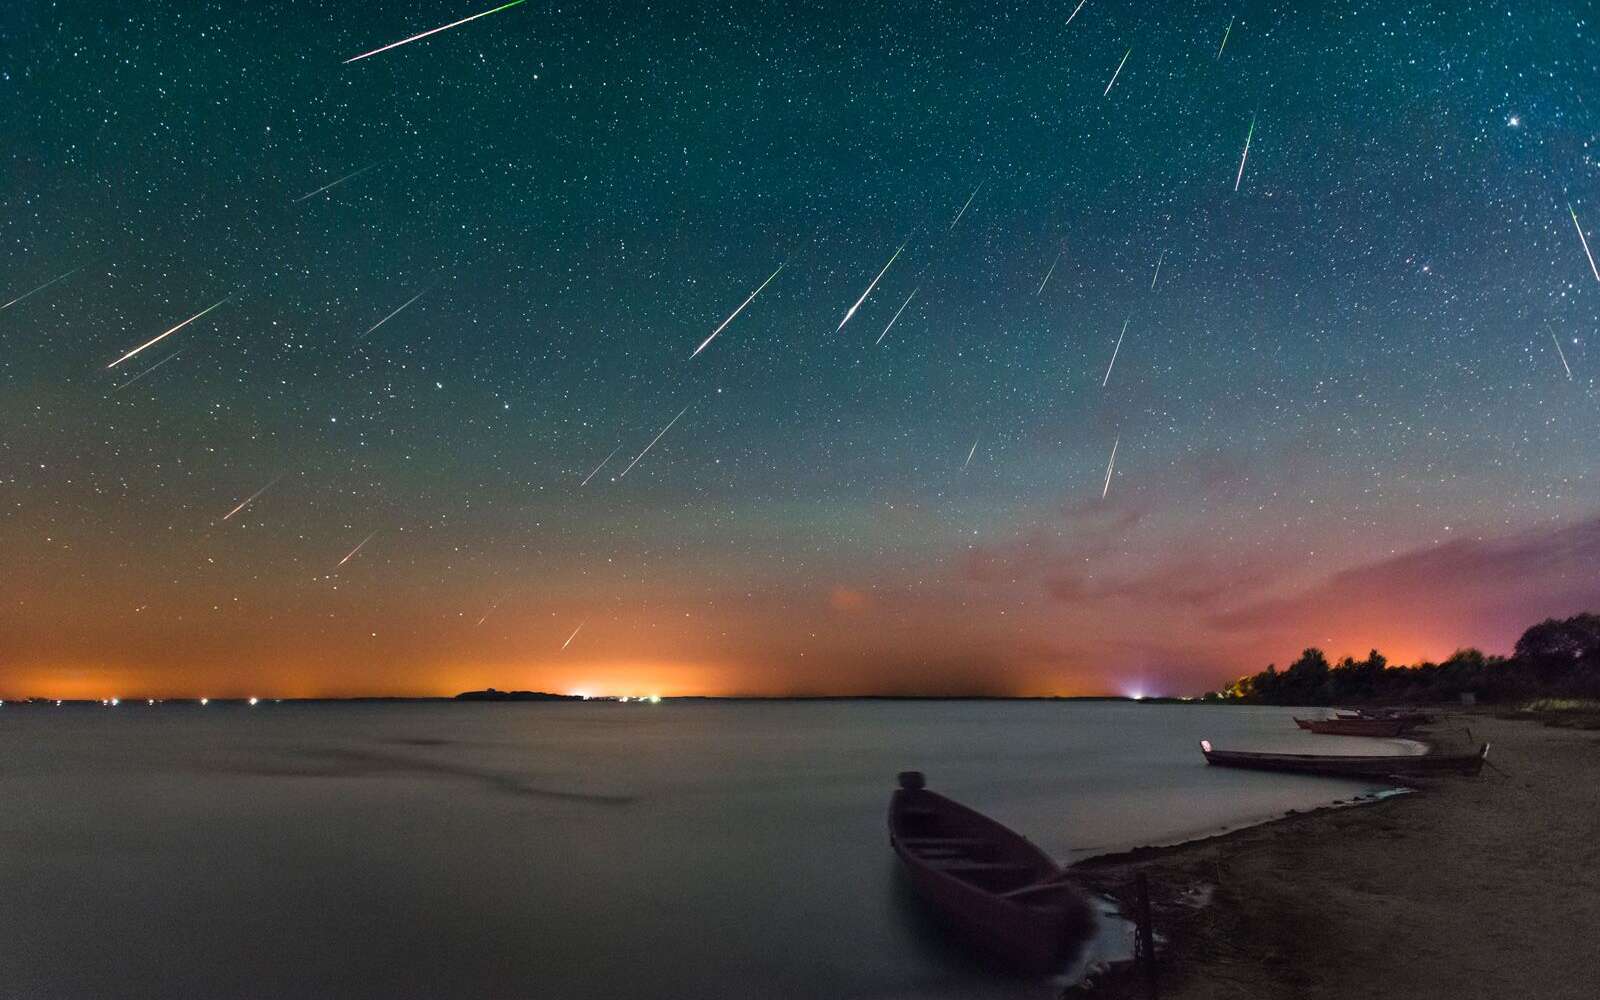 Image composite réunissant deux heures d’exposition de la pluie annuelle d’étoiles filantes, les Perséides, le 12 août 2016 (nuit du maximum d’activité), au-dessus du lac Svityaz, en Ukraine. © Ihor Khomych, via Spaceweather